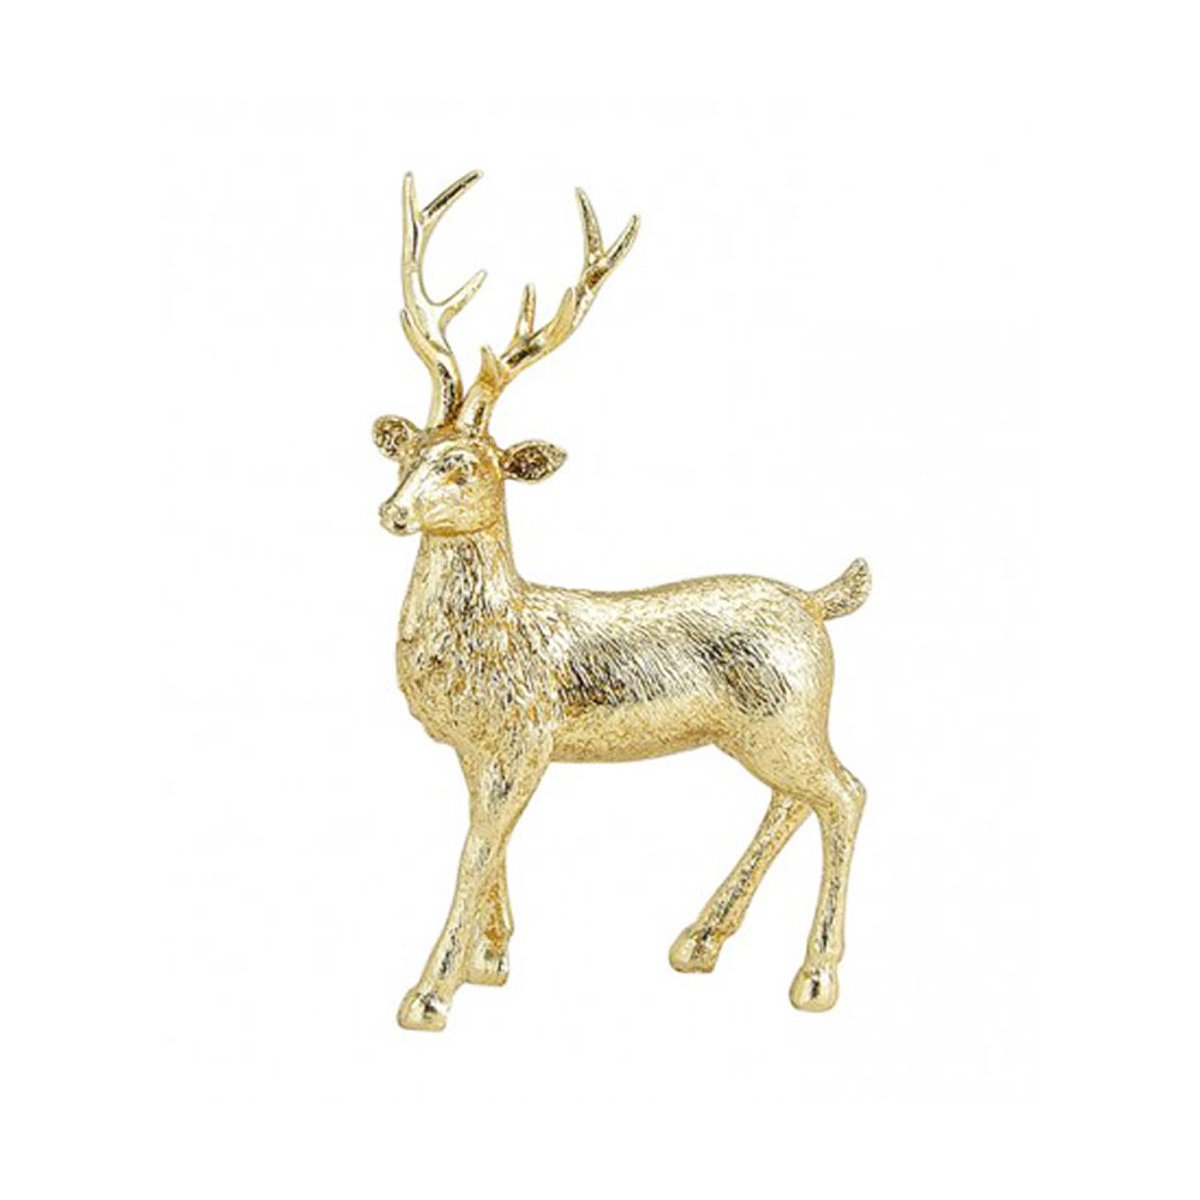 Hirsch gold 21x14 cm - Deko Figur, Weihnachtsdekoration, festliche De,  12,95 €